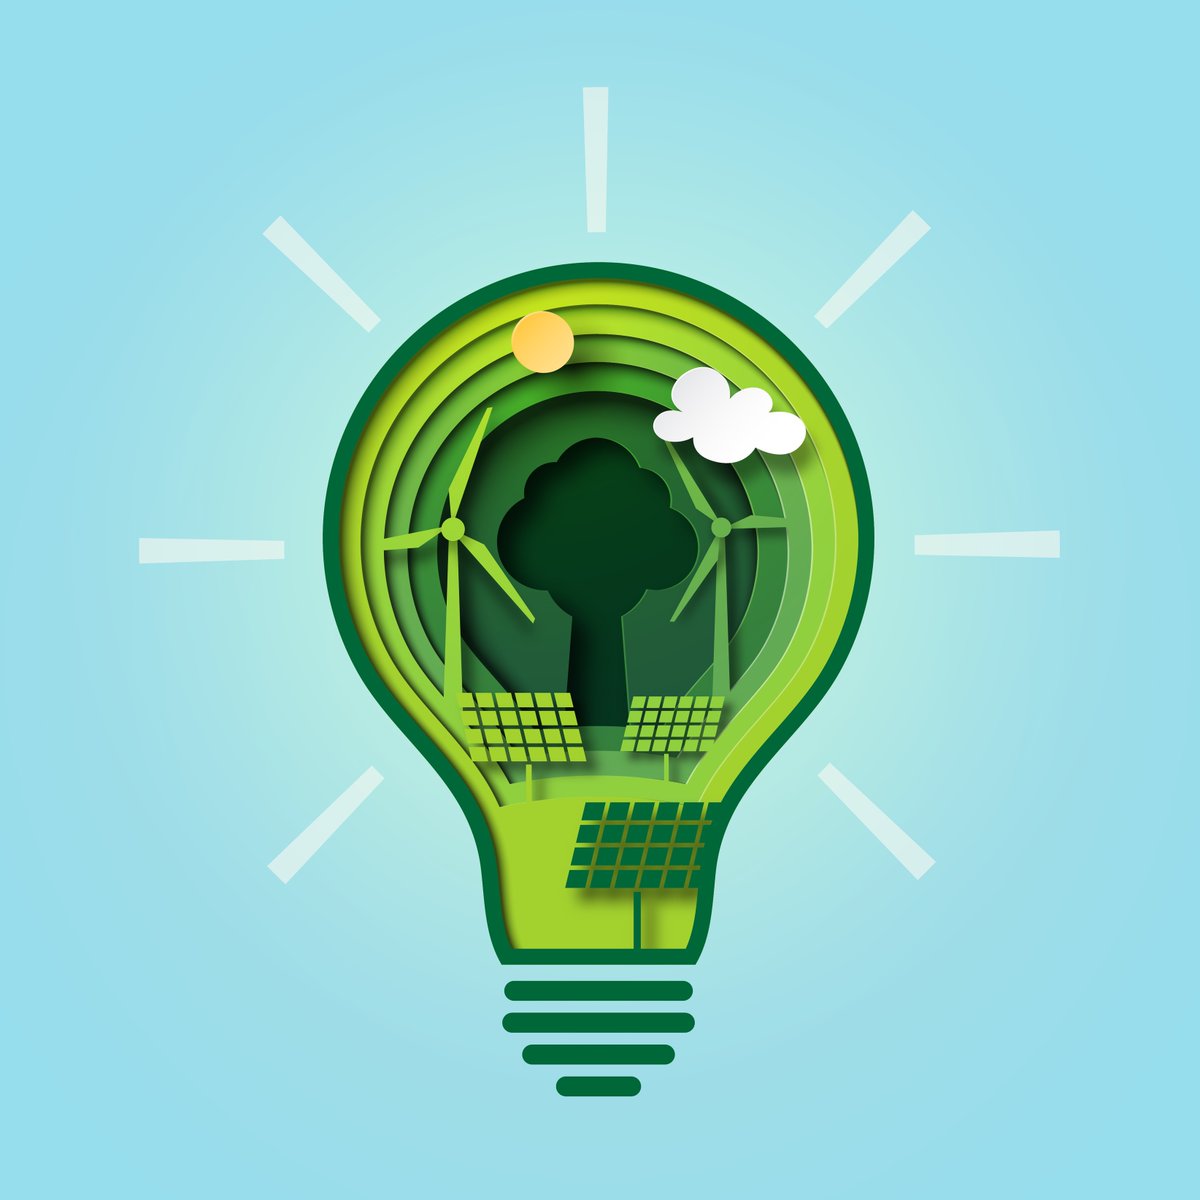 🔋#FedZero – ein neues System des verteilten Lernens – macht KI-Modelle energiesparsam dank grüner Energie.Entwickelt haben es @bifoldberlin-Forscher*innen, u.a. unser Assoz. Wissenschaftler & ehem. Sprecher @Odej7 (@TUBerlin). Mehr 👉tinyurl.com/FedZero #digitalfuture